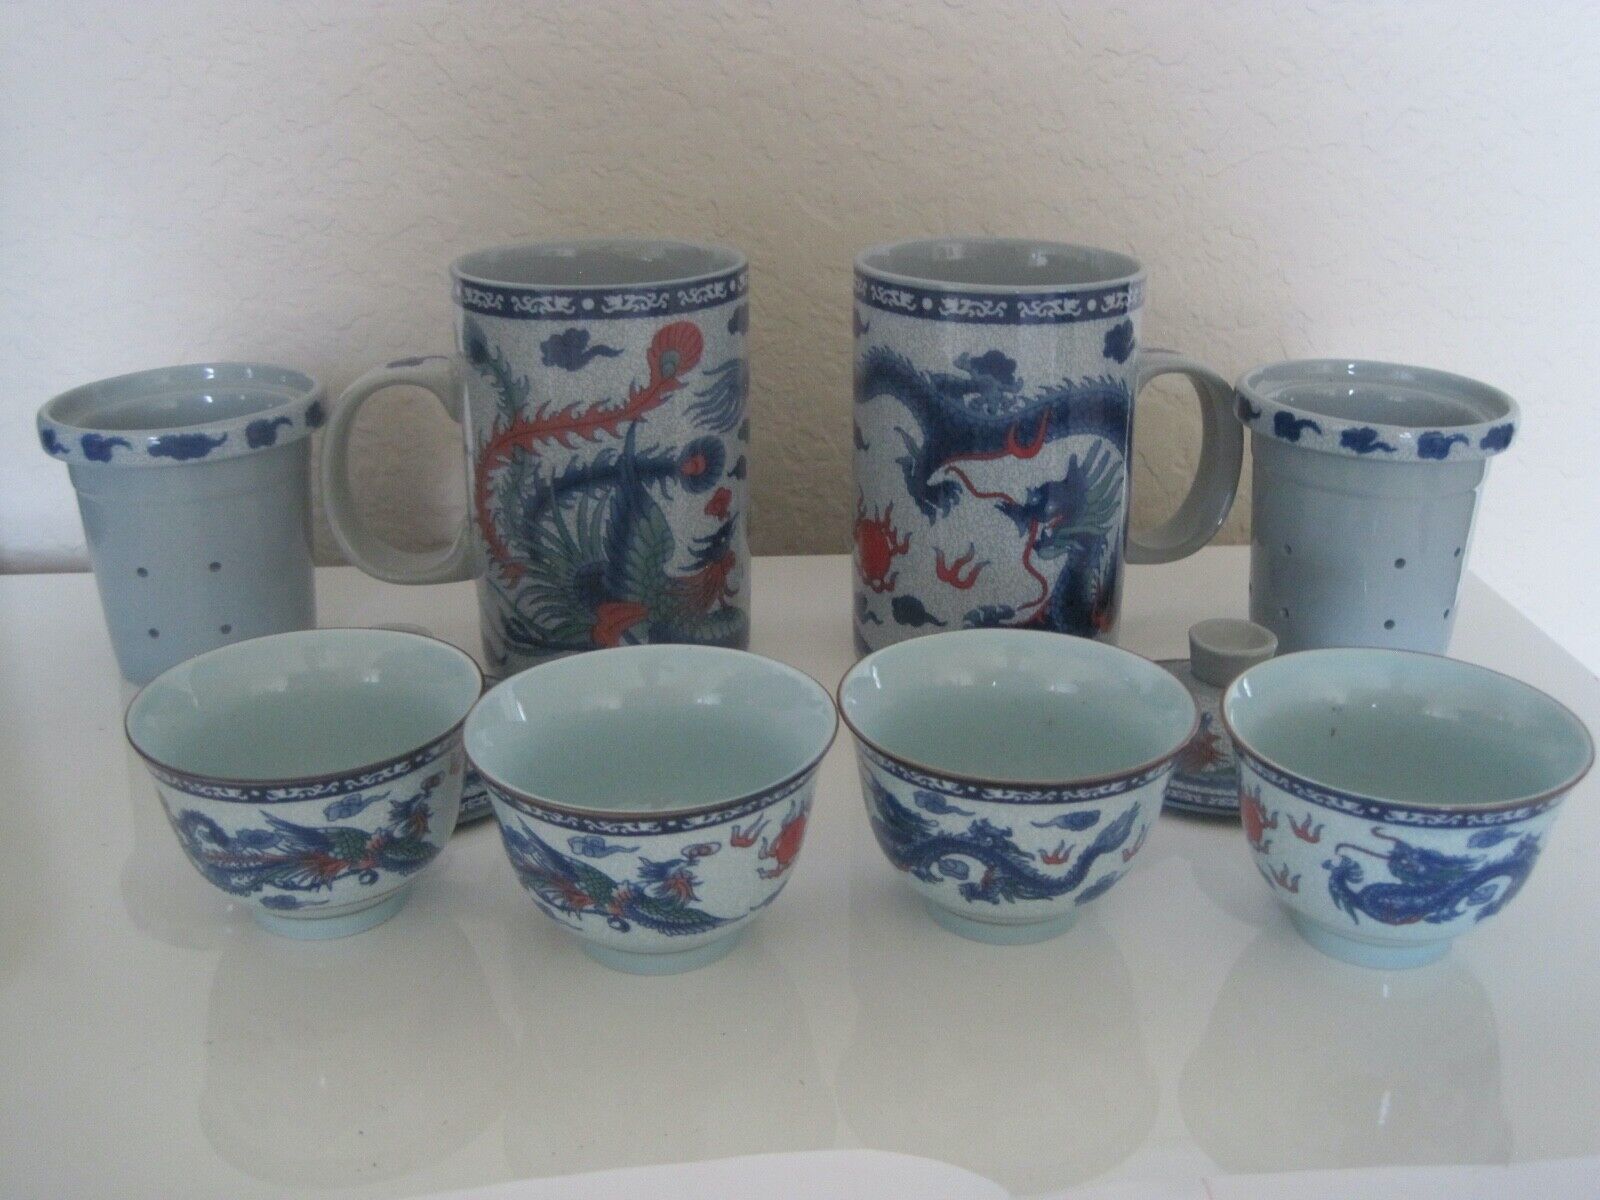 Asian Tea Mugs w Inserts Lids 4 Small Bluish Bowls M Mark Made China B7 EUC